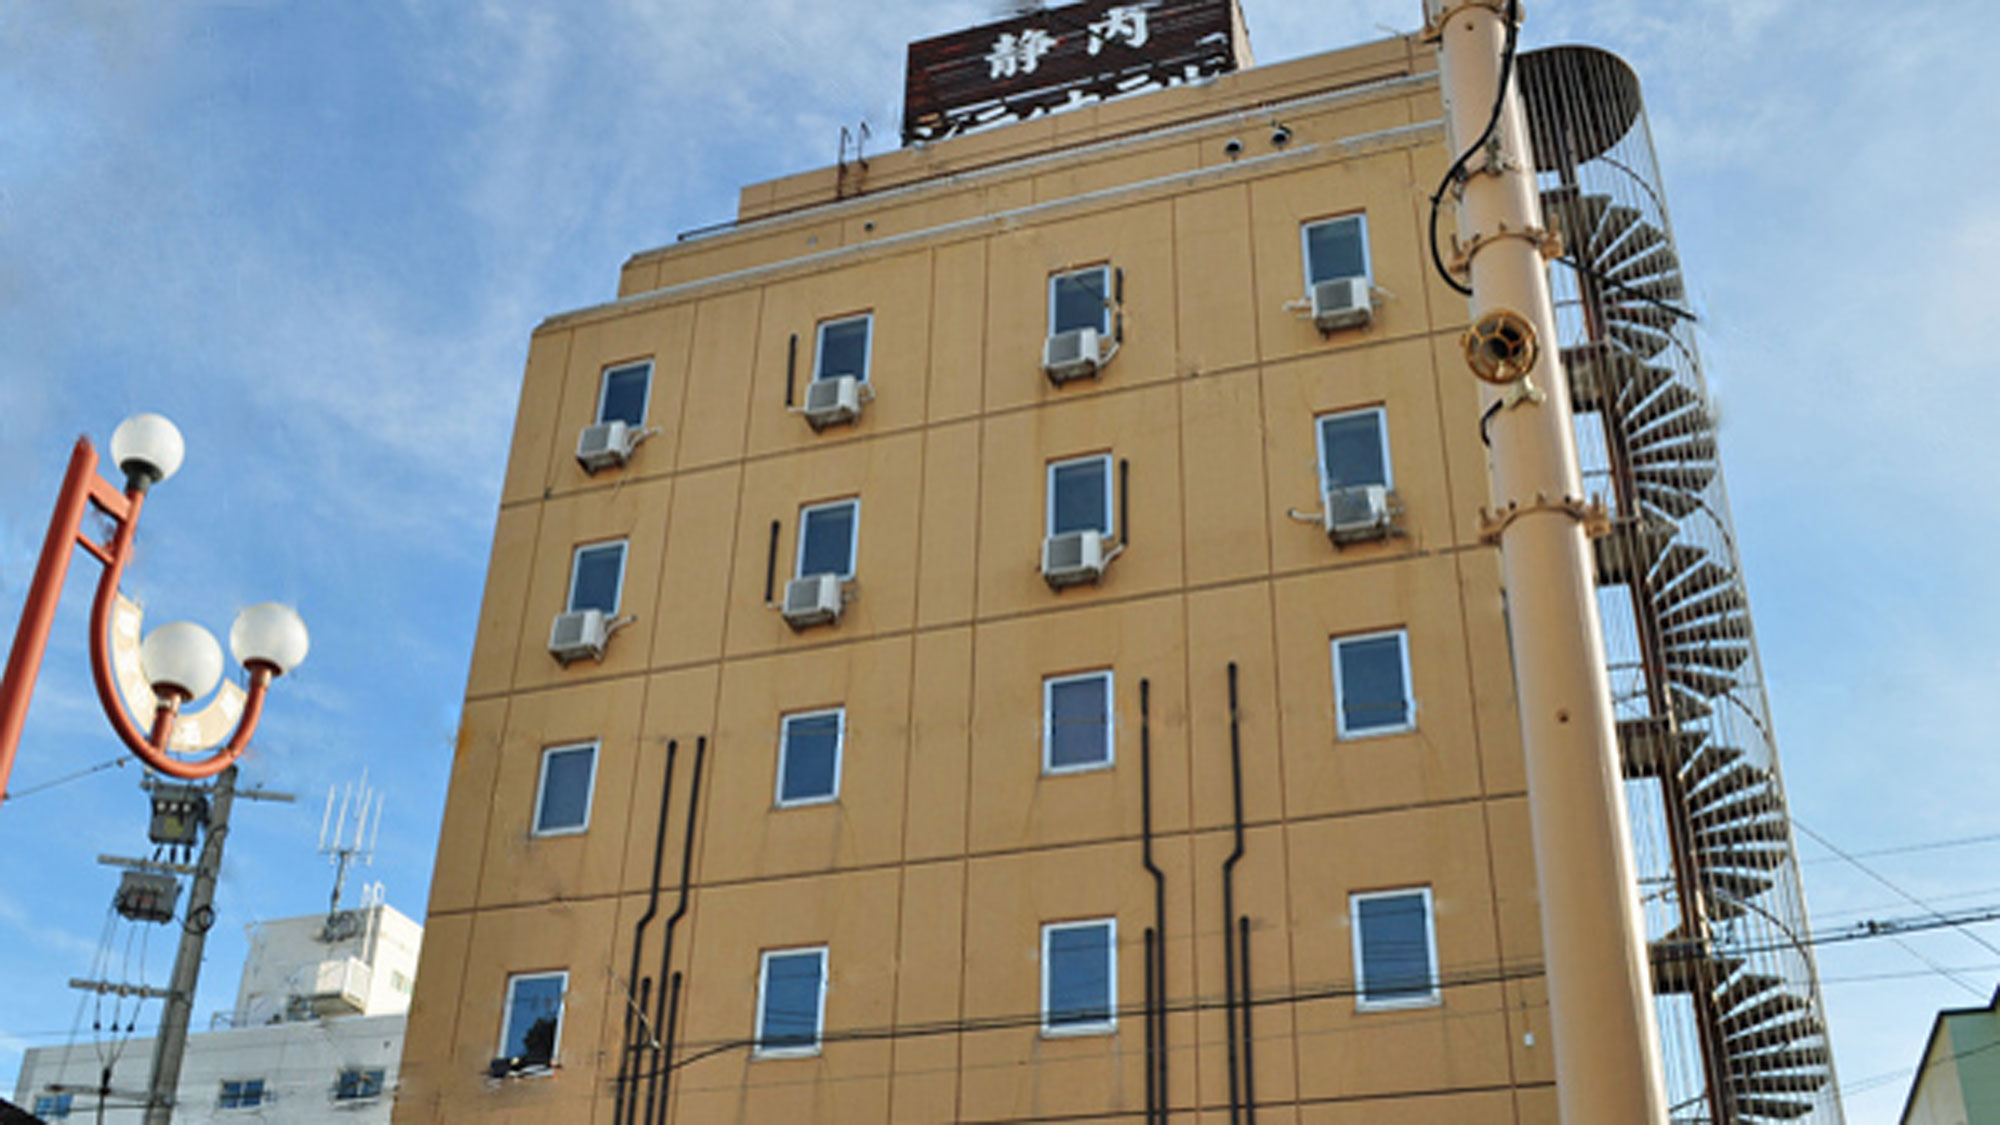 Shizunai City Hotel